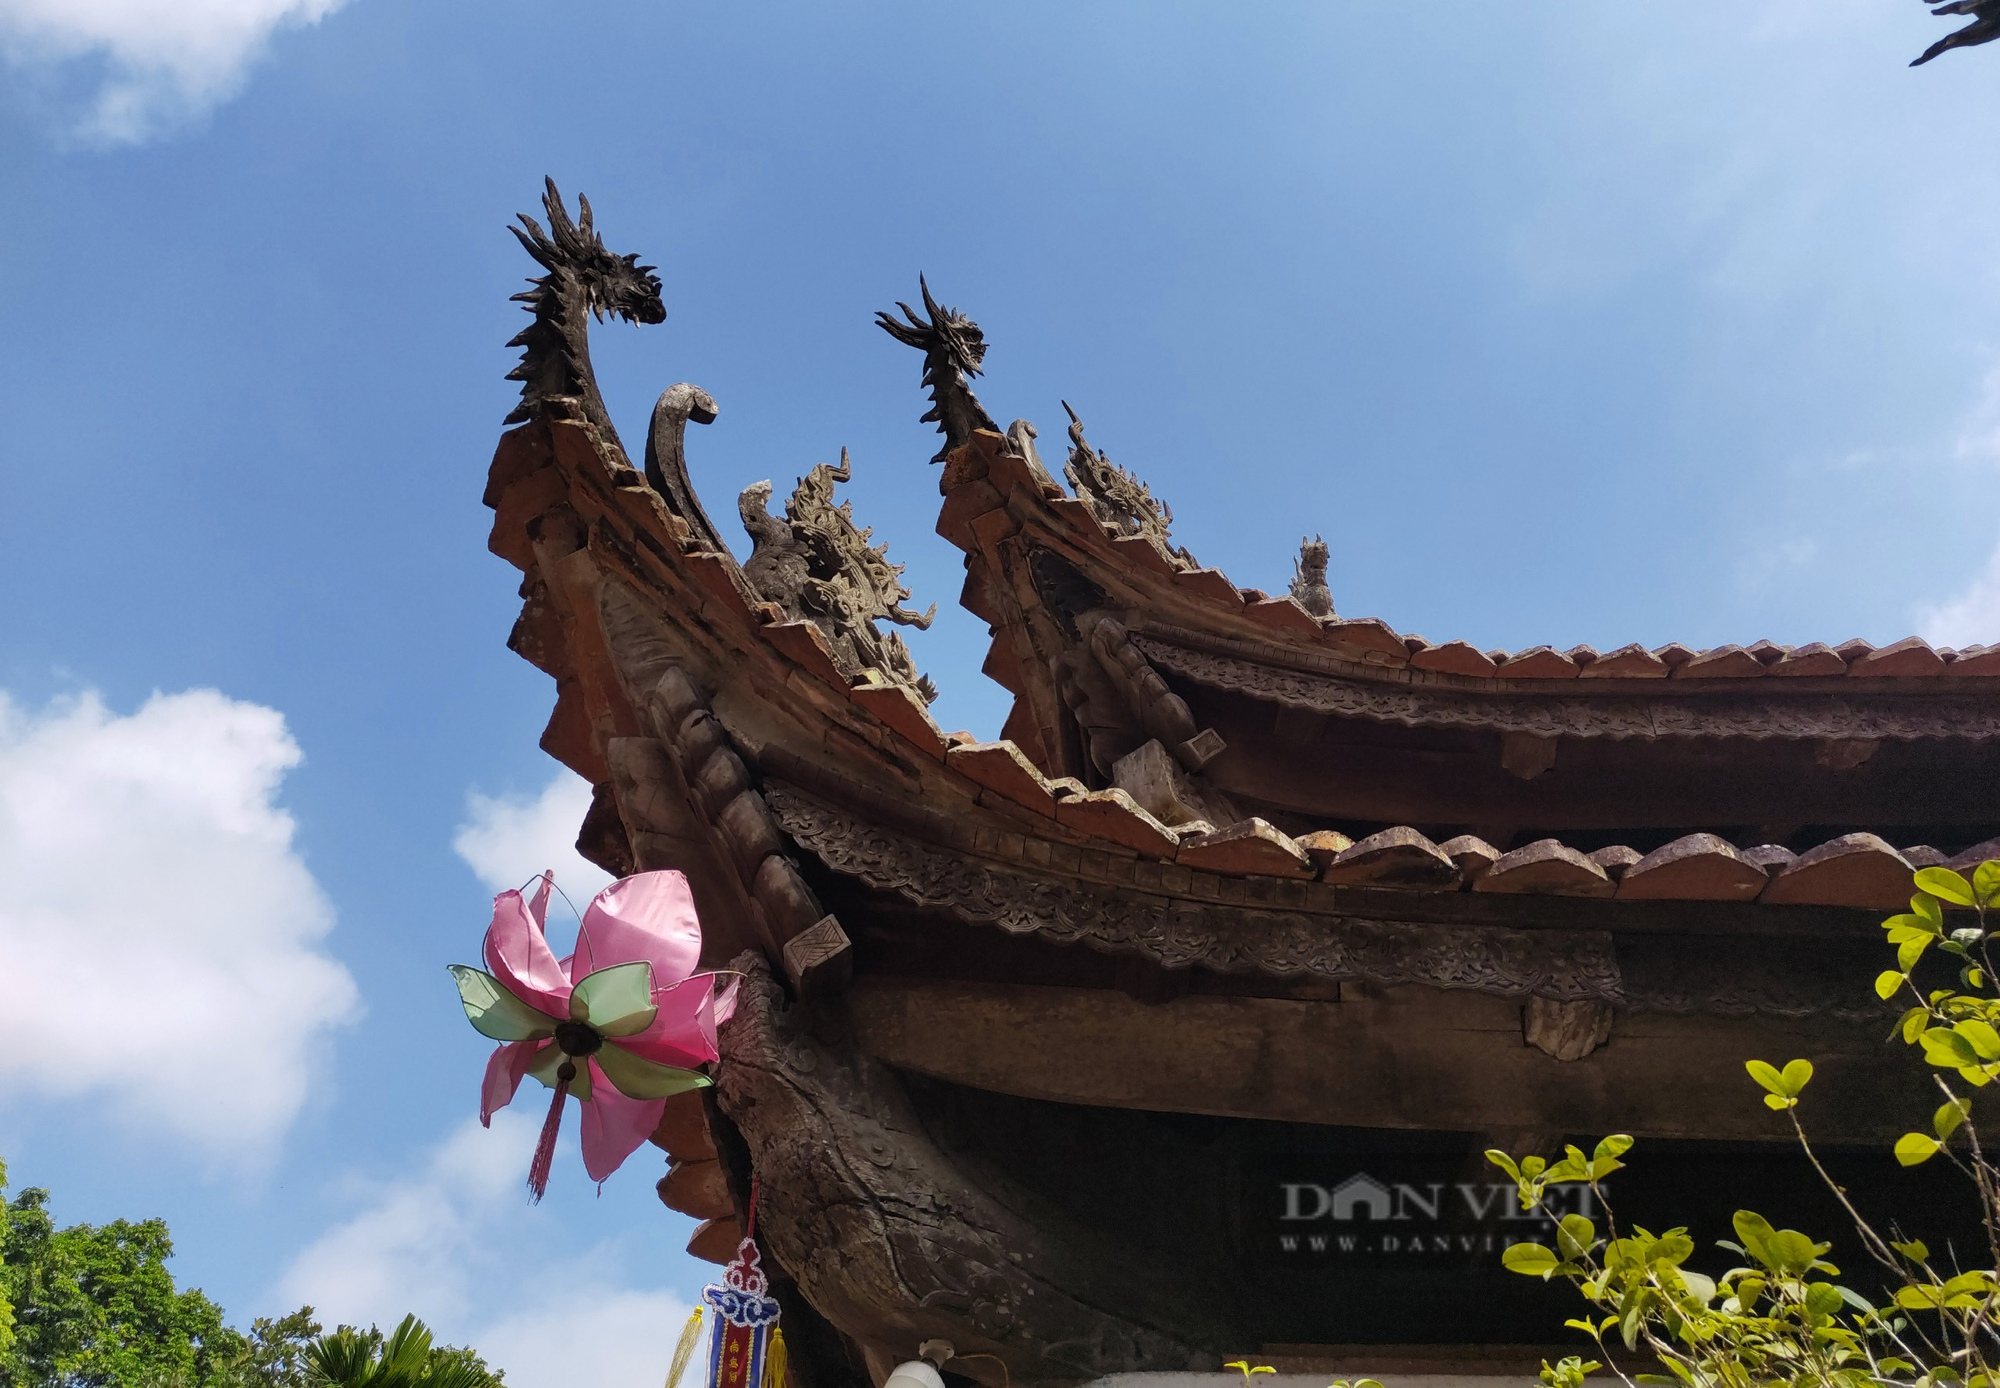 Ngôi chùa cổ gần 4 thế kỷ: Điểm du lịch Di tích Quốc gia đặc biệt ở Hà Nội - Ảnh 8.